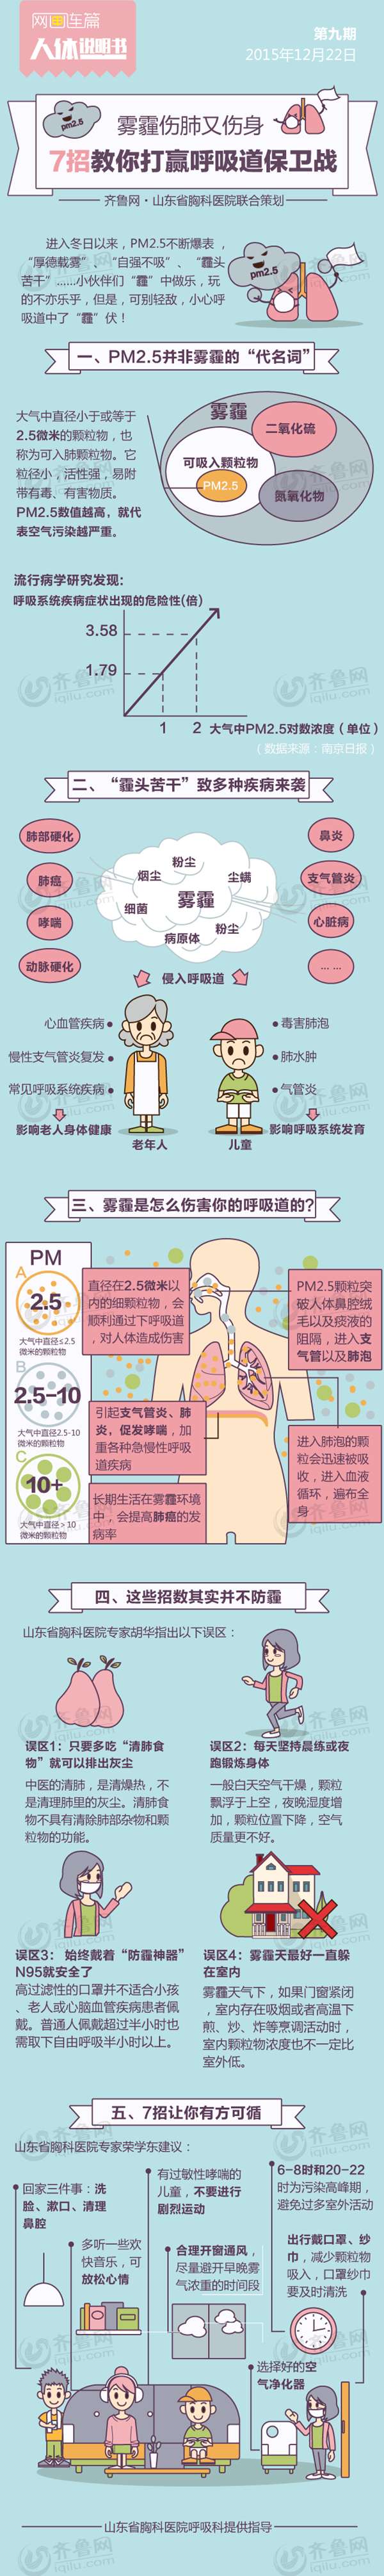 网画连篇人体说明书雾霾呼吸道疾病